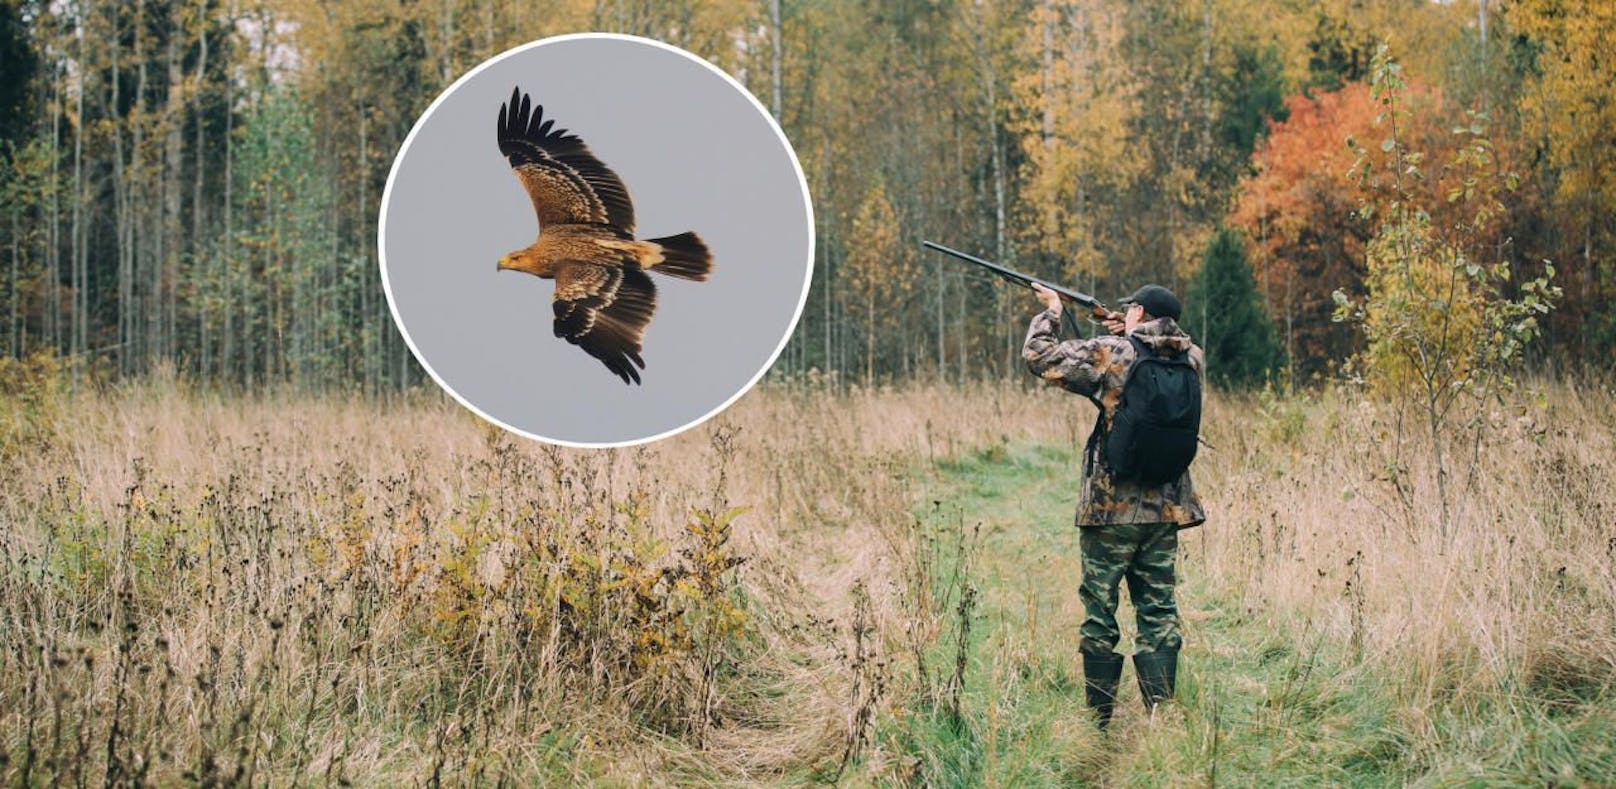 Der Jagdverband will offenbar mittelfristig auf Greifvögel schießen dürfen.